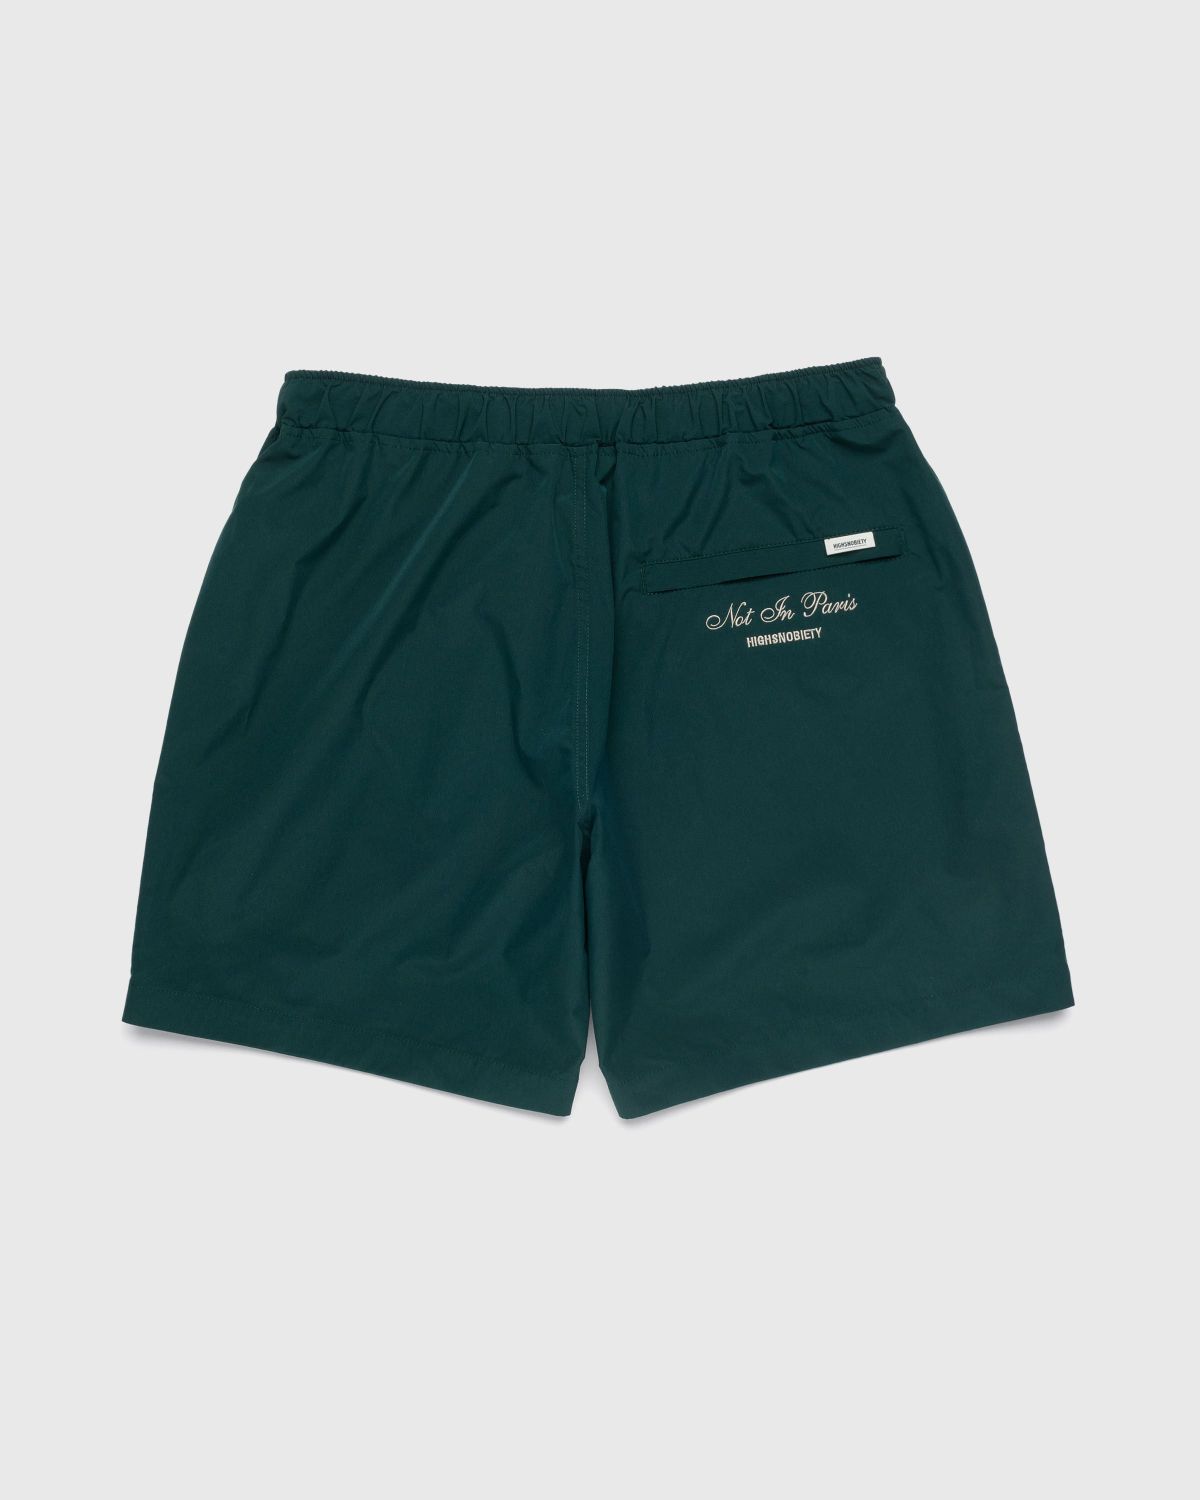 Highsnobiety – Not in Paris 5 Nylon Shorts - Shorts - Green - Image 2